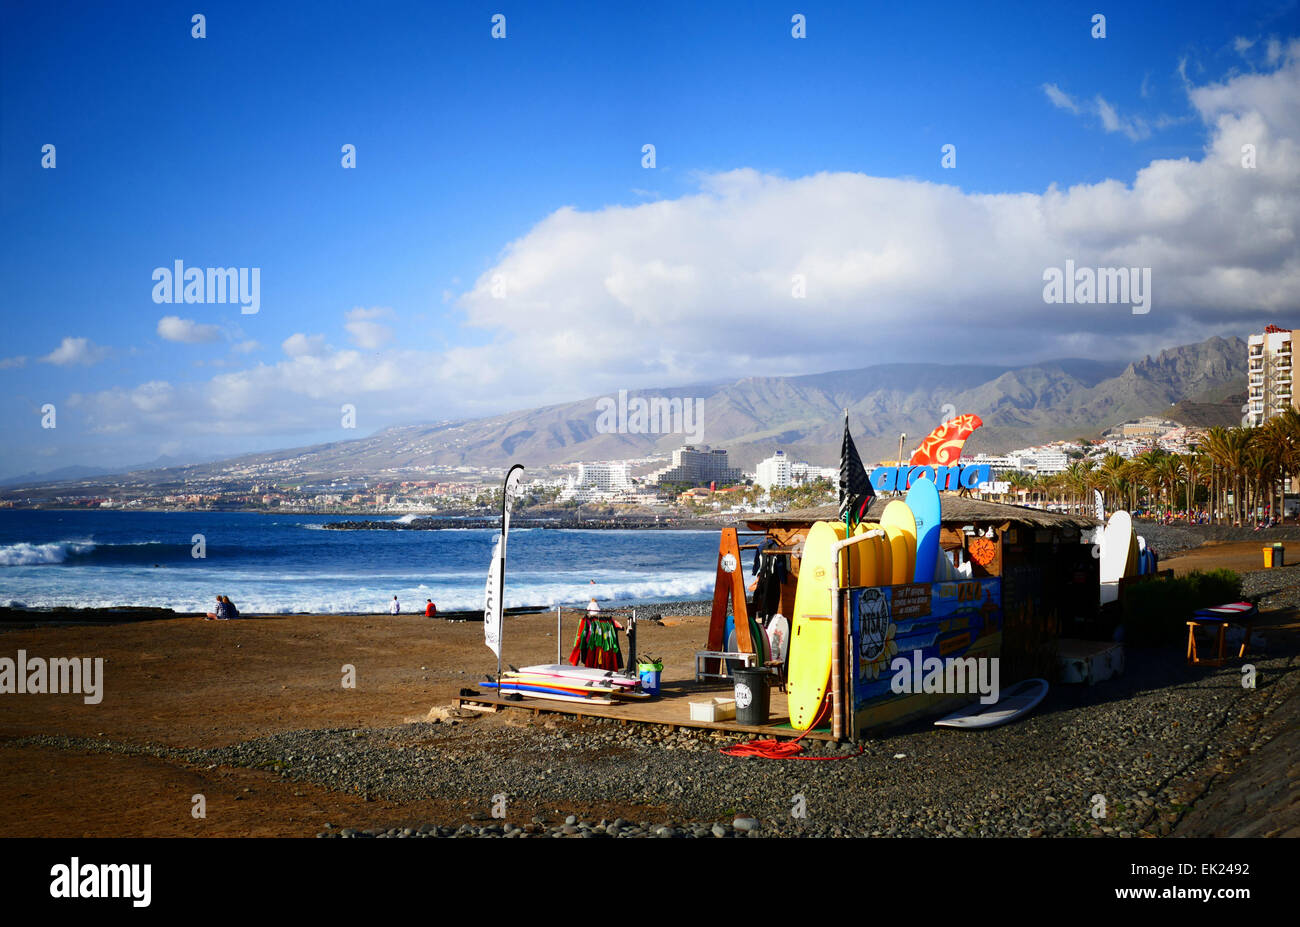 Las Americas Beach promenade de palmiers de l'île de Tenerife Îles Canaries Espagne Banque D'Images